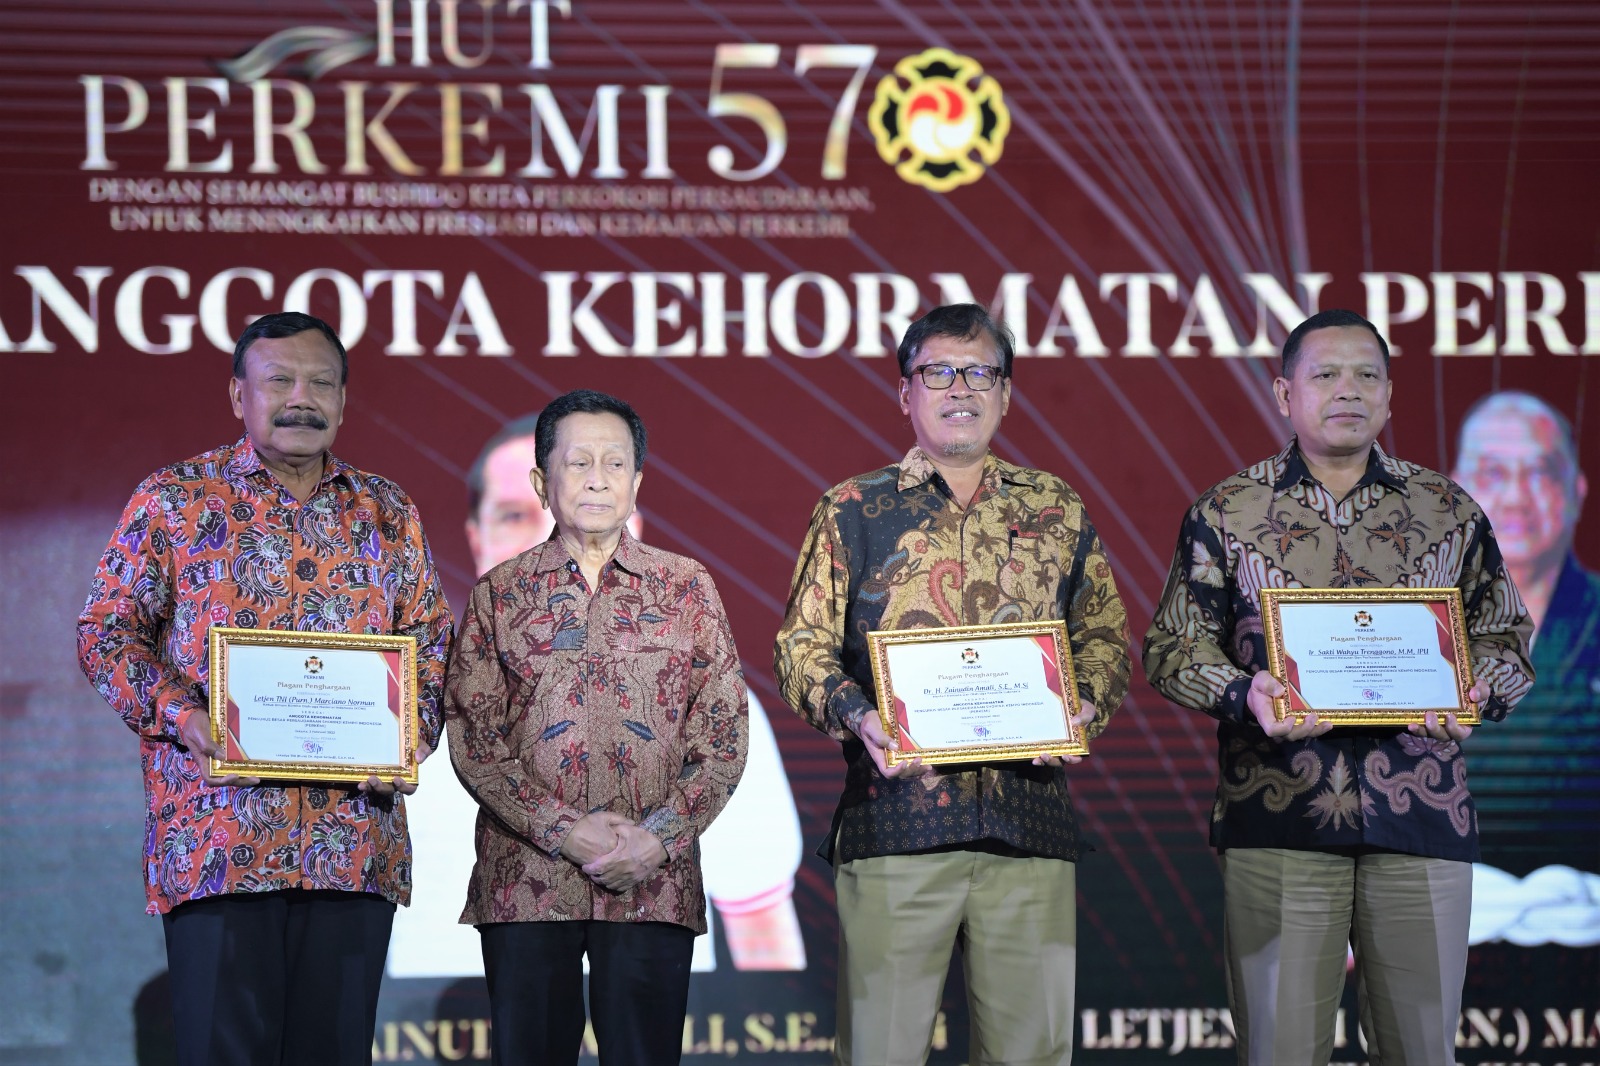 HUT Perkemi ke-57, Kemenpora Harap Kempo Indonesia Bisa Berprestasi Ditingkat Internasional